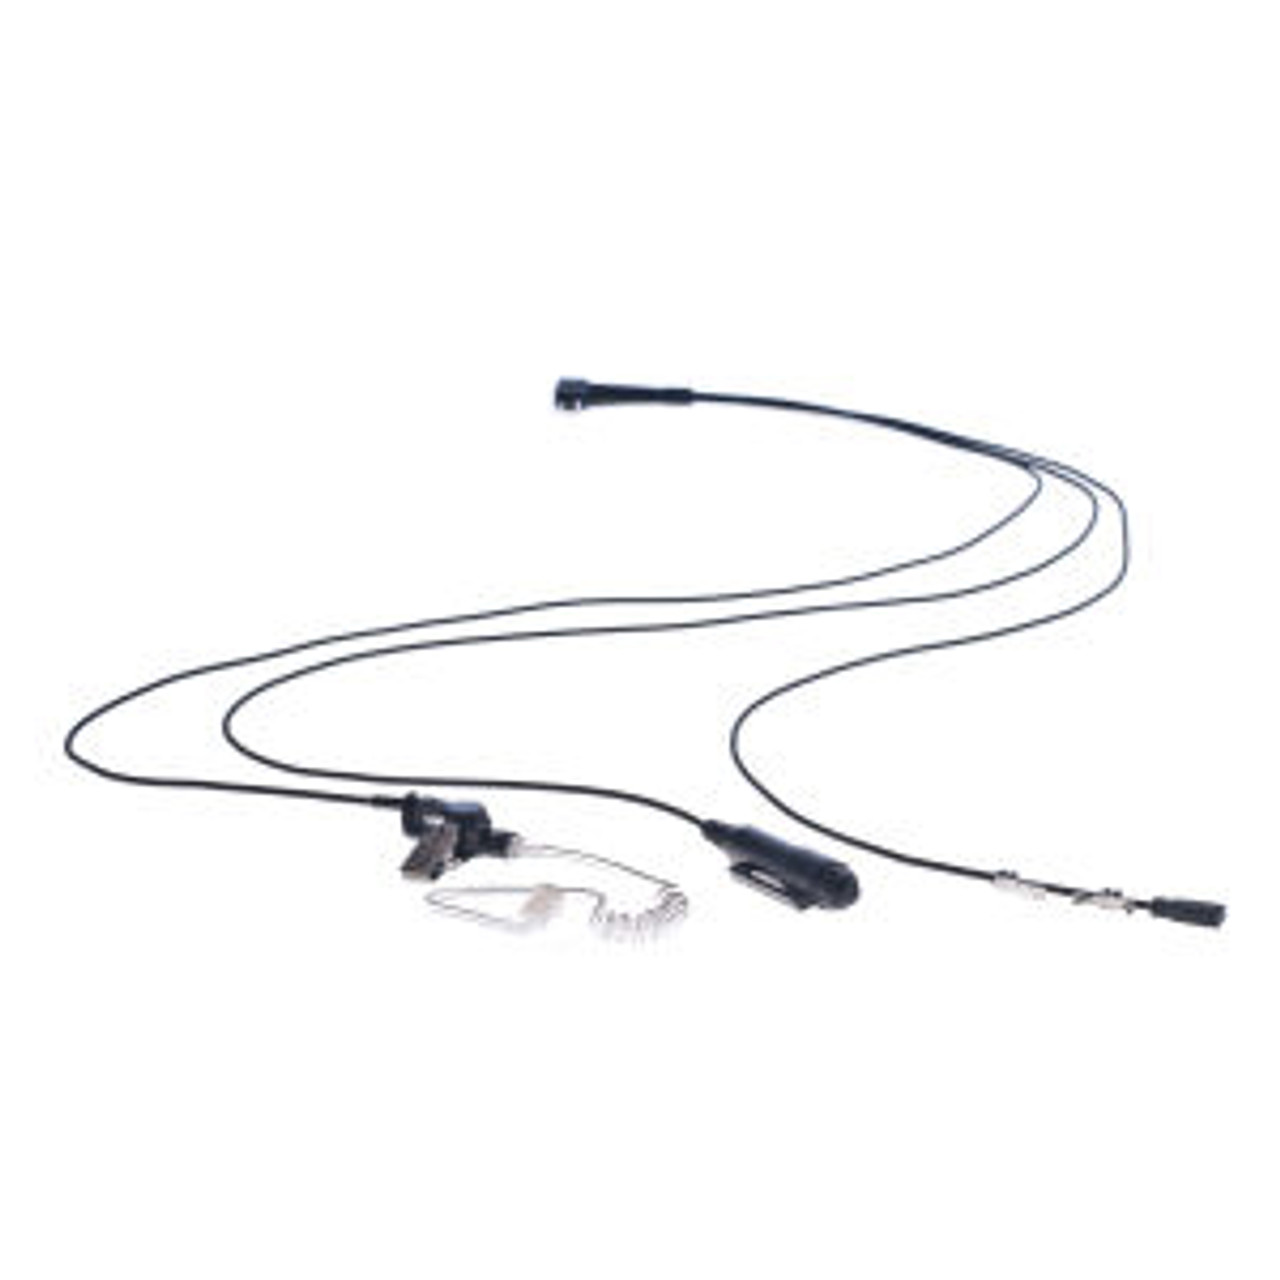 Kenwood TK-5310G 3-Wire Surveillance Kit